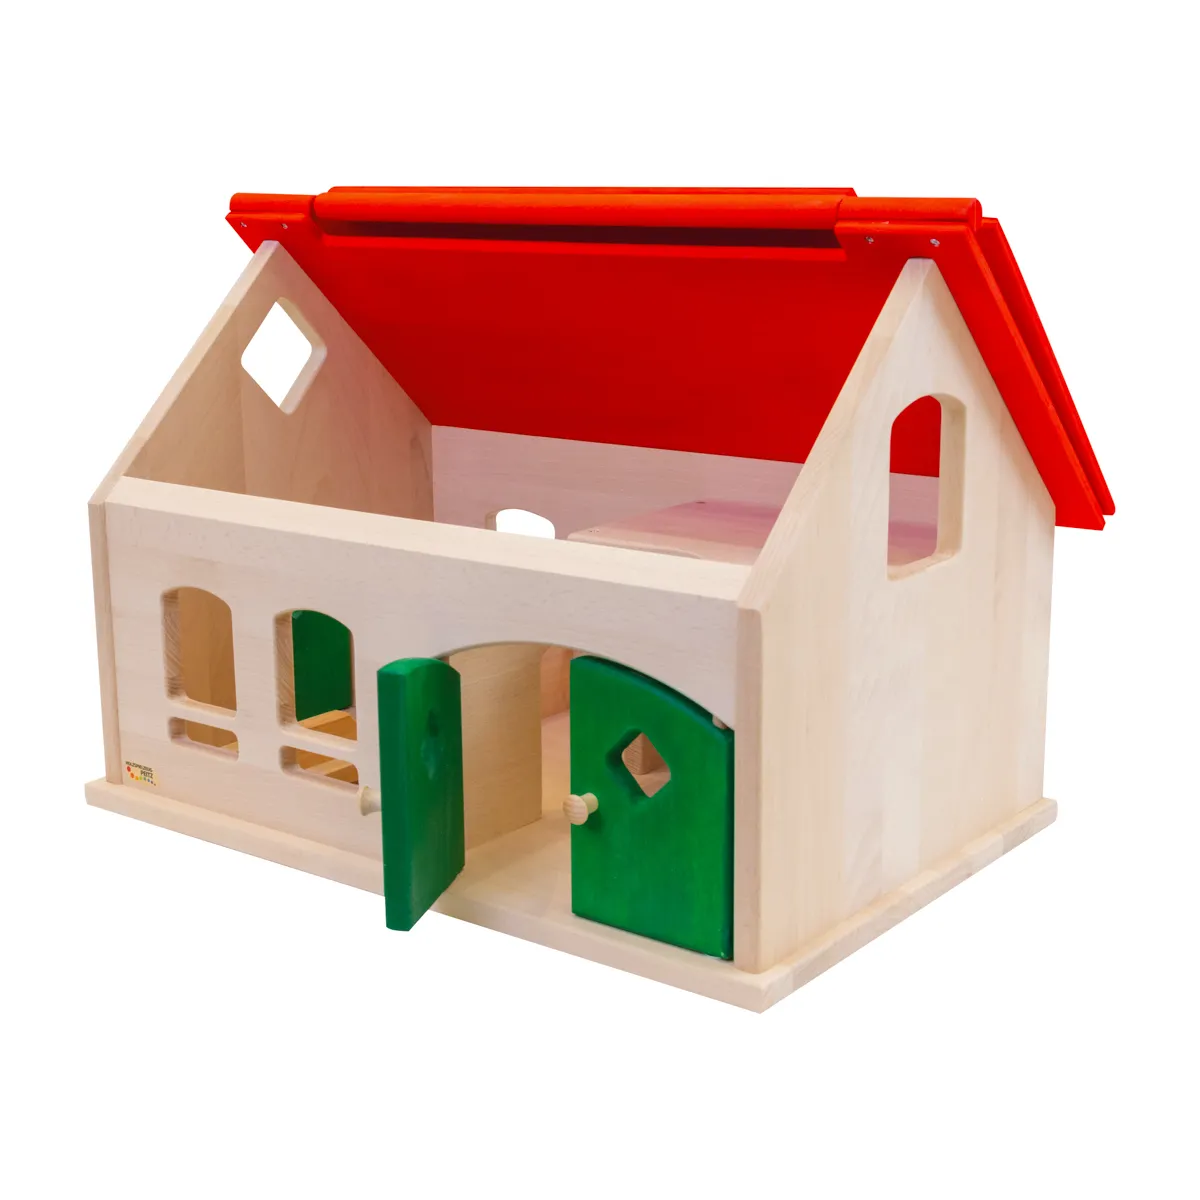 Kinder-Spiele-Bauernhof rot aus Massivholz - hochwertiges Spielezug